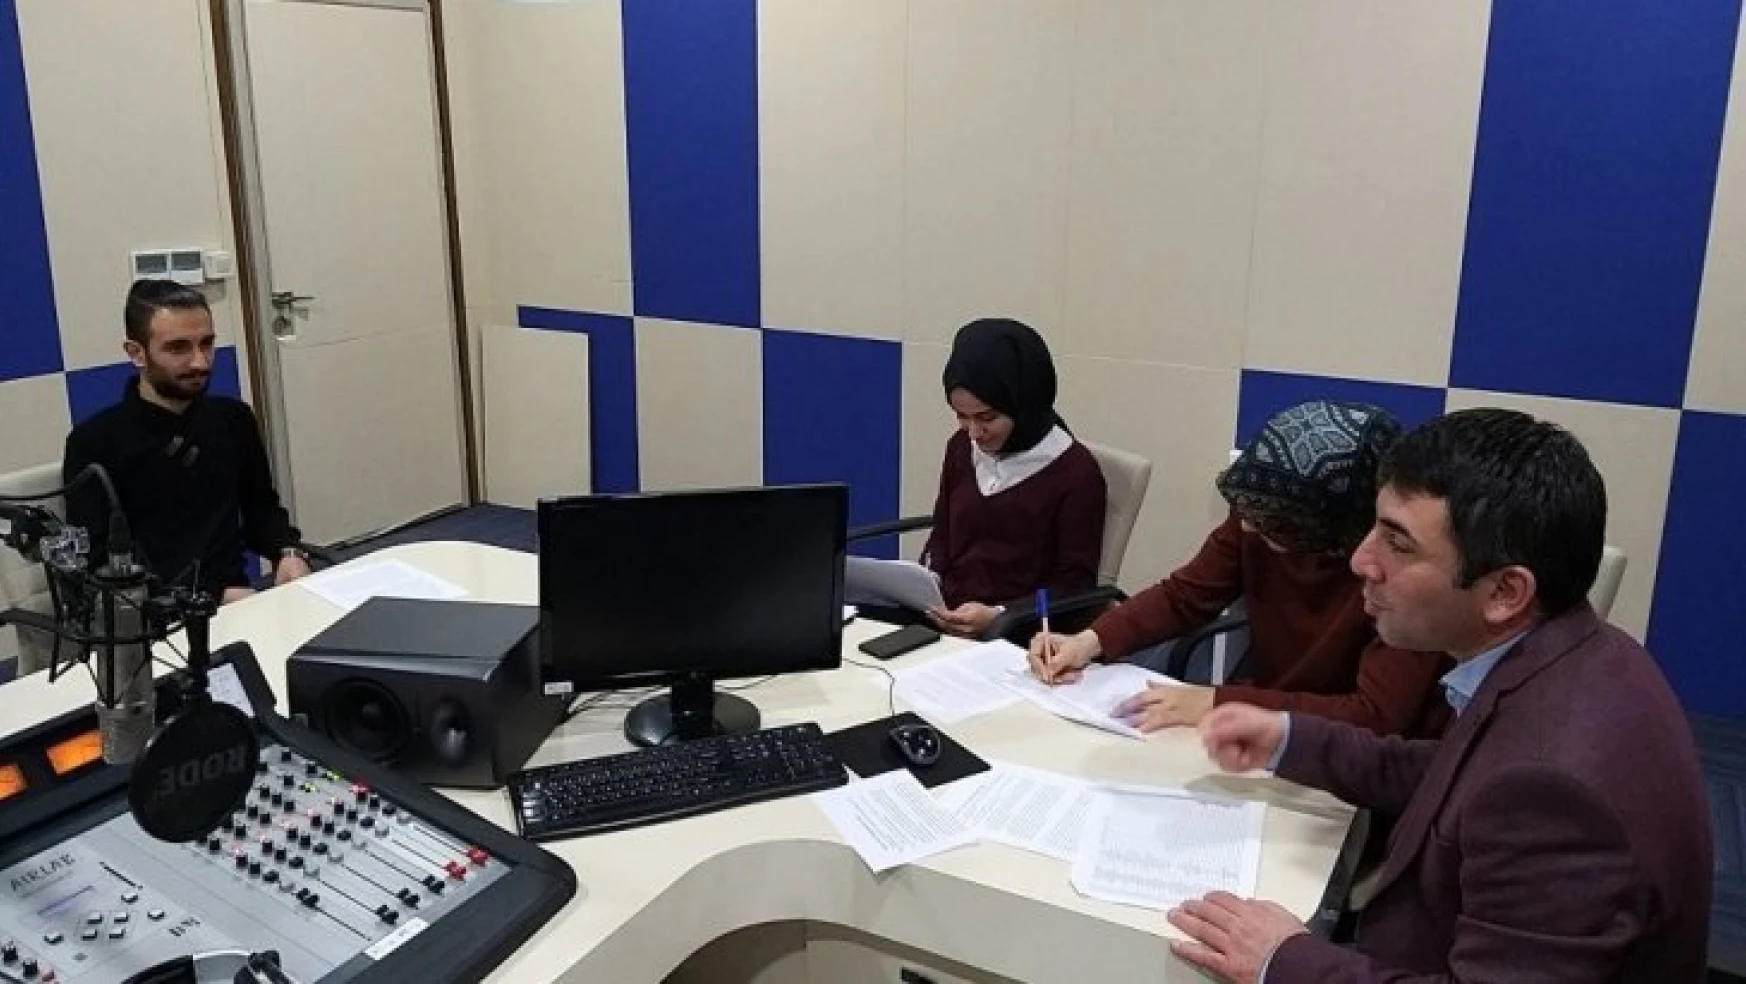 Malatya'da 25 kişilik radyo kadrosu için 180 kişi başvurdu